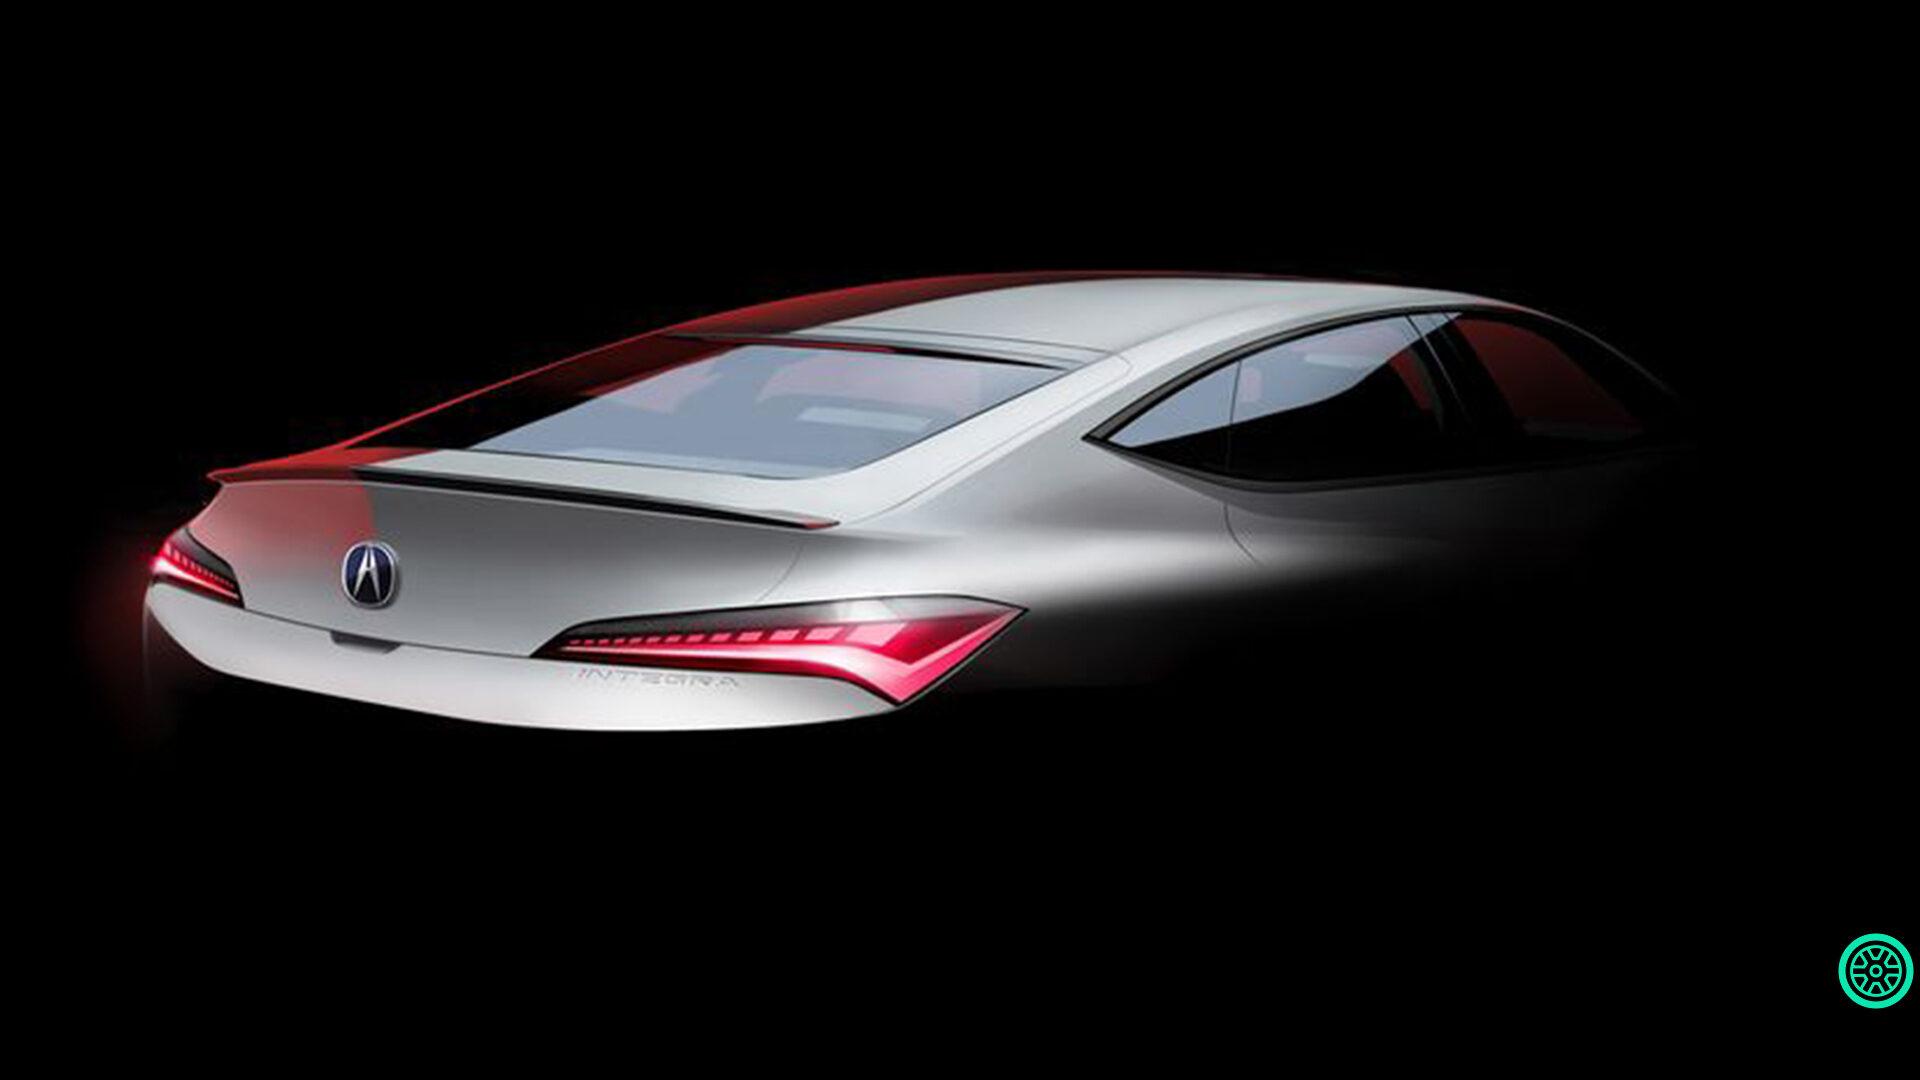 Yeni Acura Integra modelinin ilk görüntüleri paylaşıldı 1